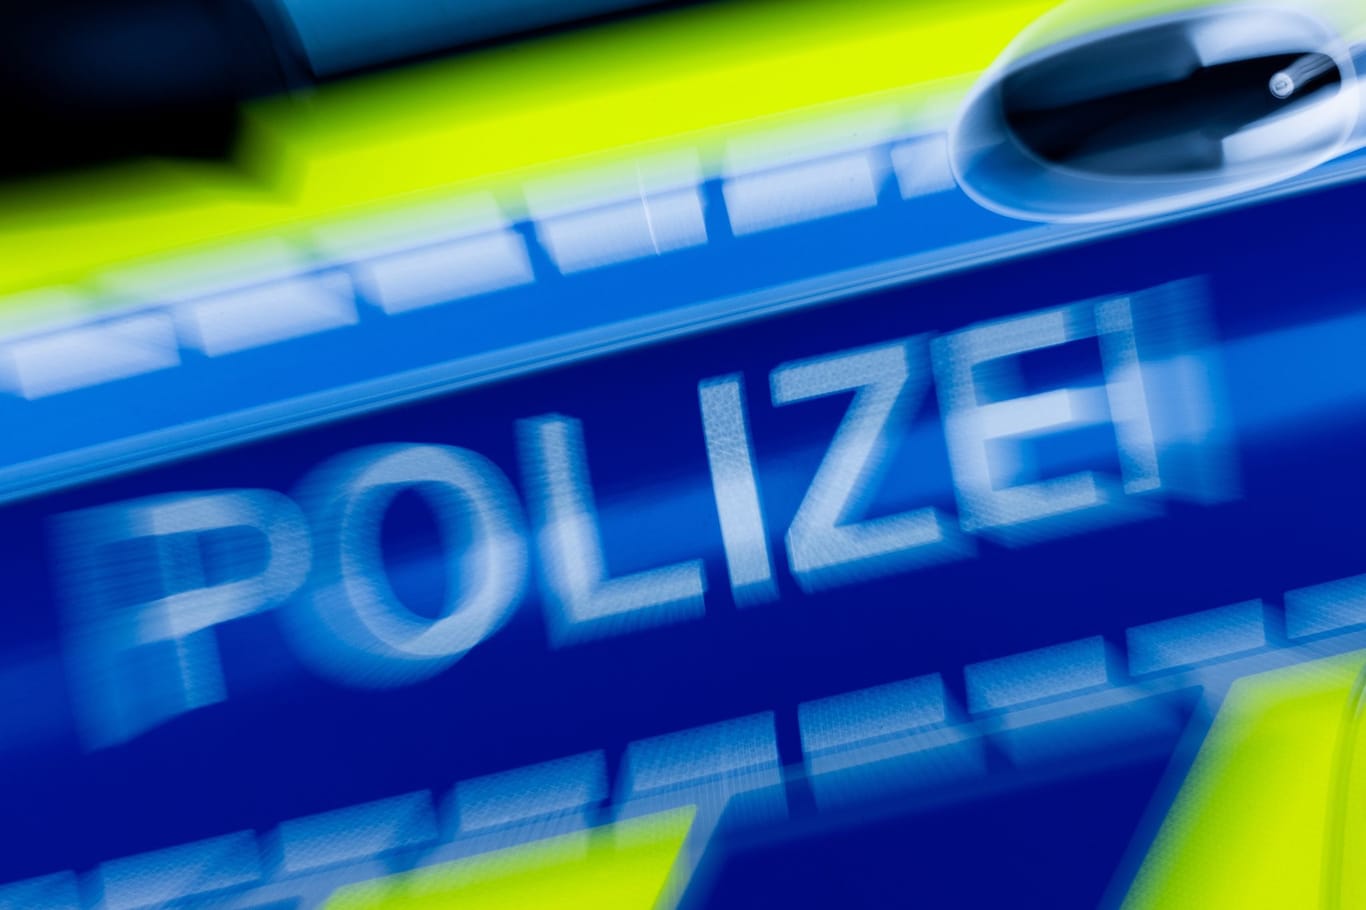 Polizei Nordrhein-Westfalen